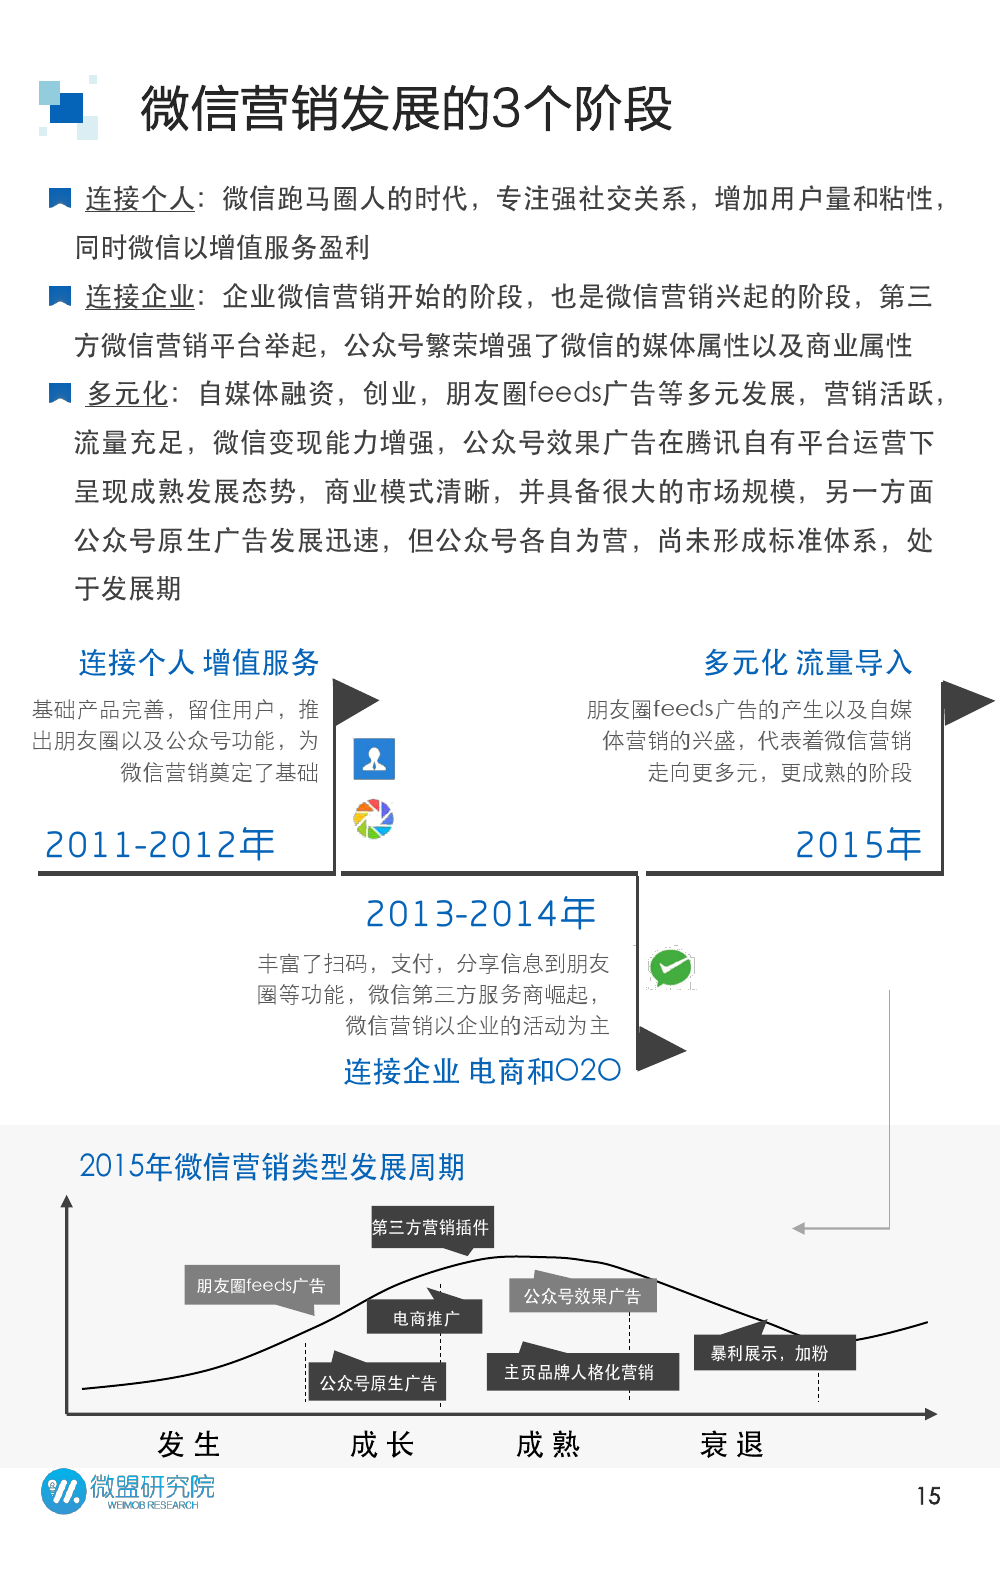 2015年微信营销研究报告_000015